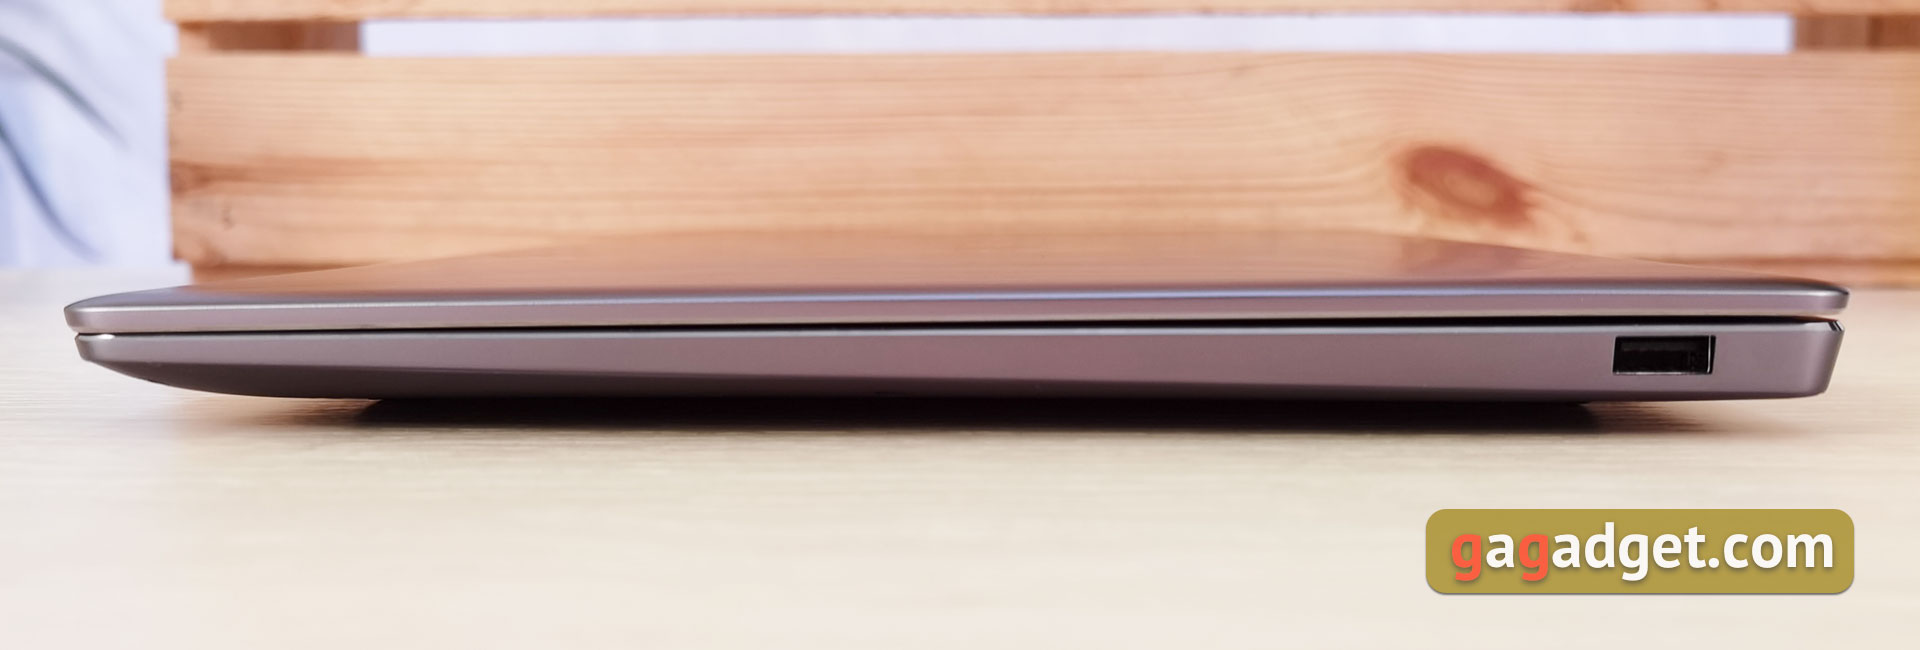 Обзор Huawei MateBook 14s: ноутбук Huawei с сервисами Google и быстрым экраном-6